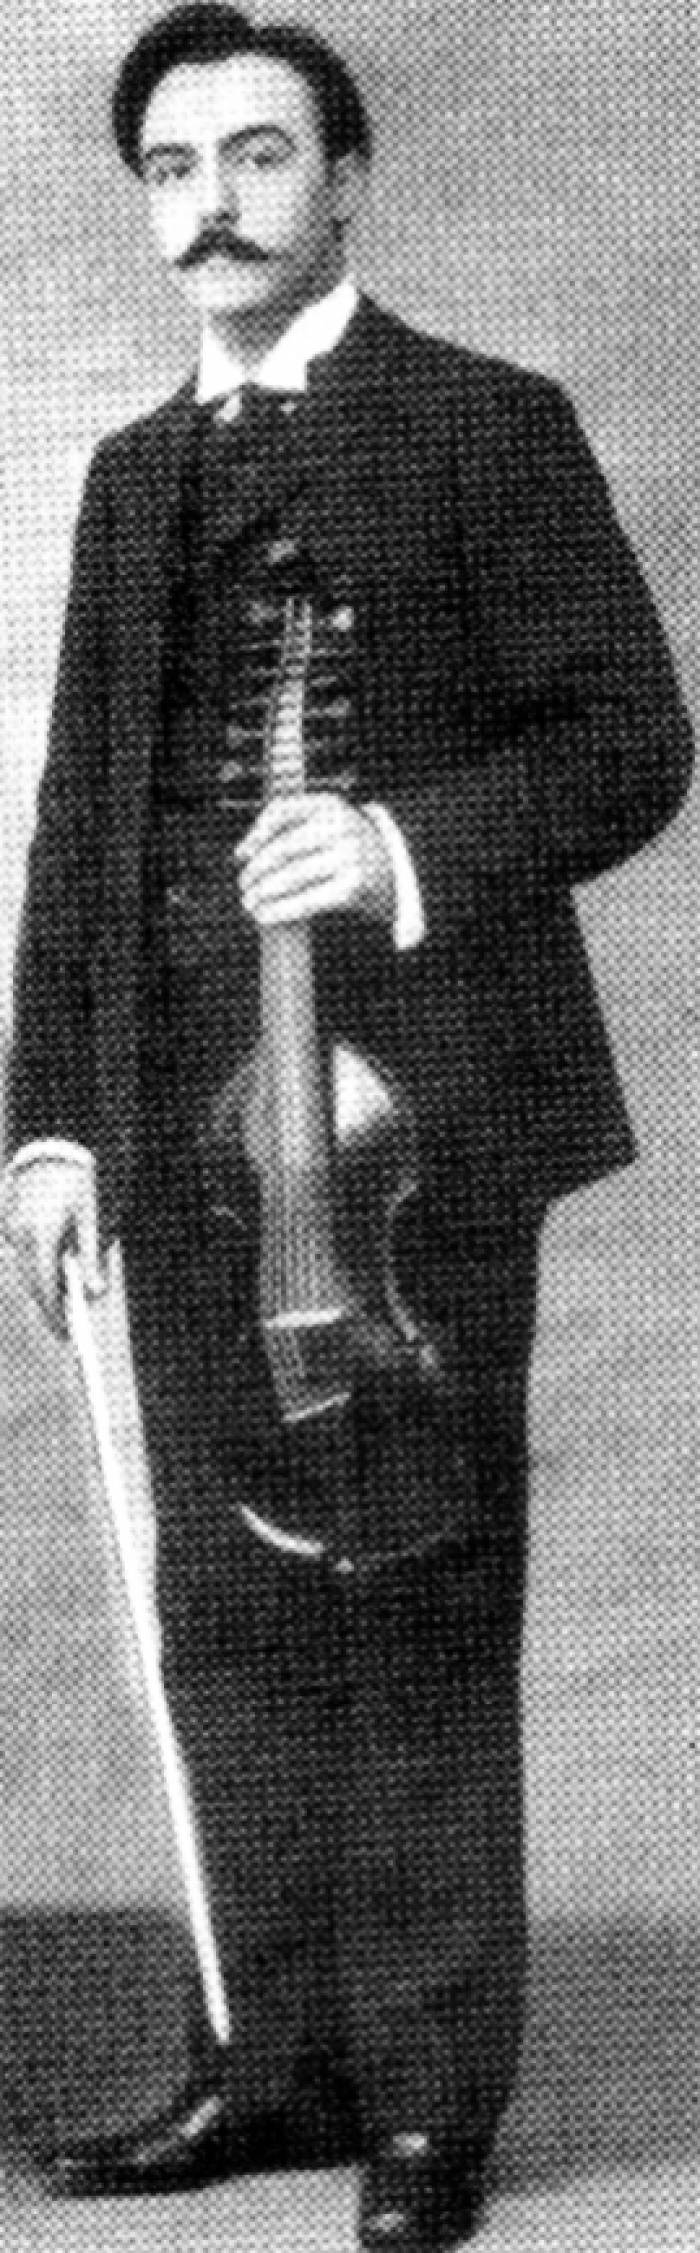 Малахитовая, в золоченом серебре миниатюра старинного, музыкального инструмента Виоль д’амур, работы итальянских ювелиров 20 века. 